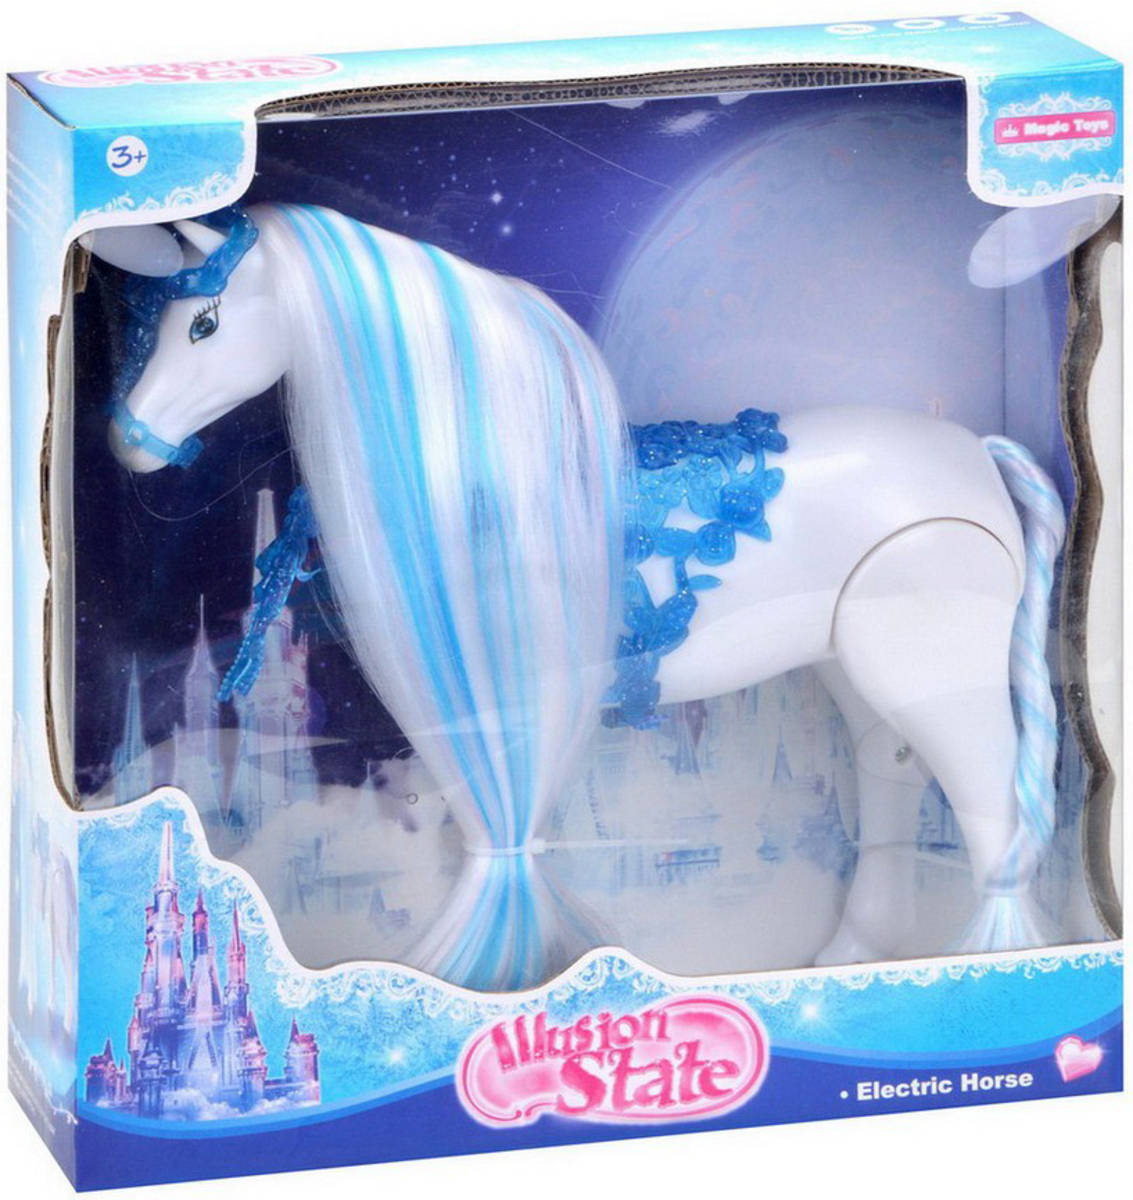 Kůň modro-bílý na baterie zimní království dlouhá hříva česací plast